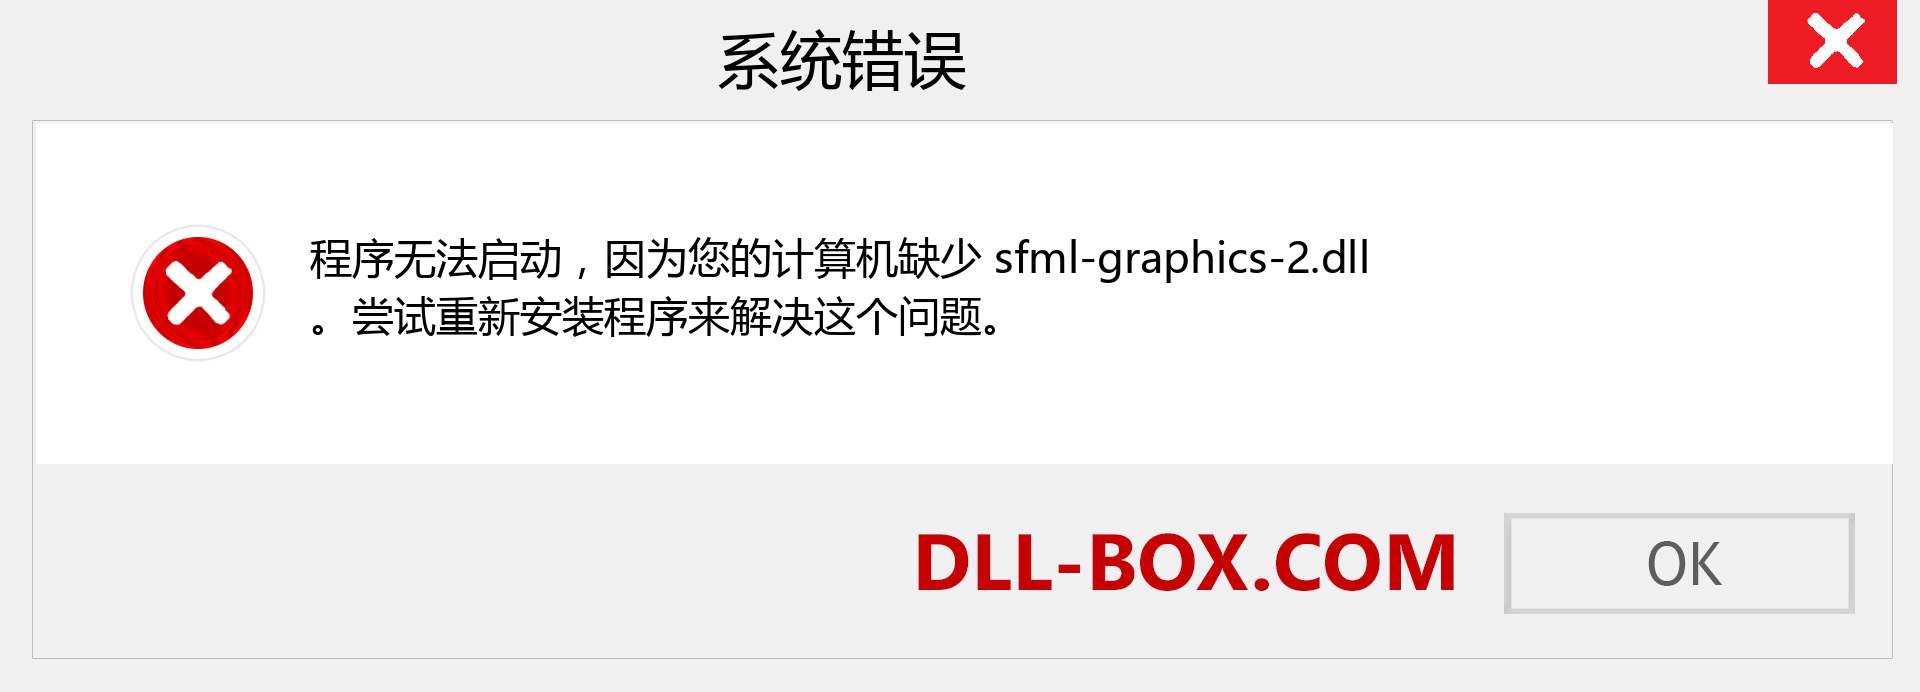 sfml-graphics-2.dll 文件丢失？。 适用于 Windows 7、8、10 的下载 - 修复 Windows、照片、图像上的 sfml-graphics-2 dll 丢失错误